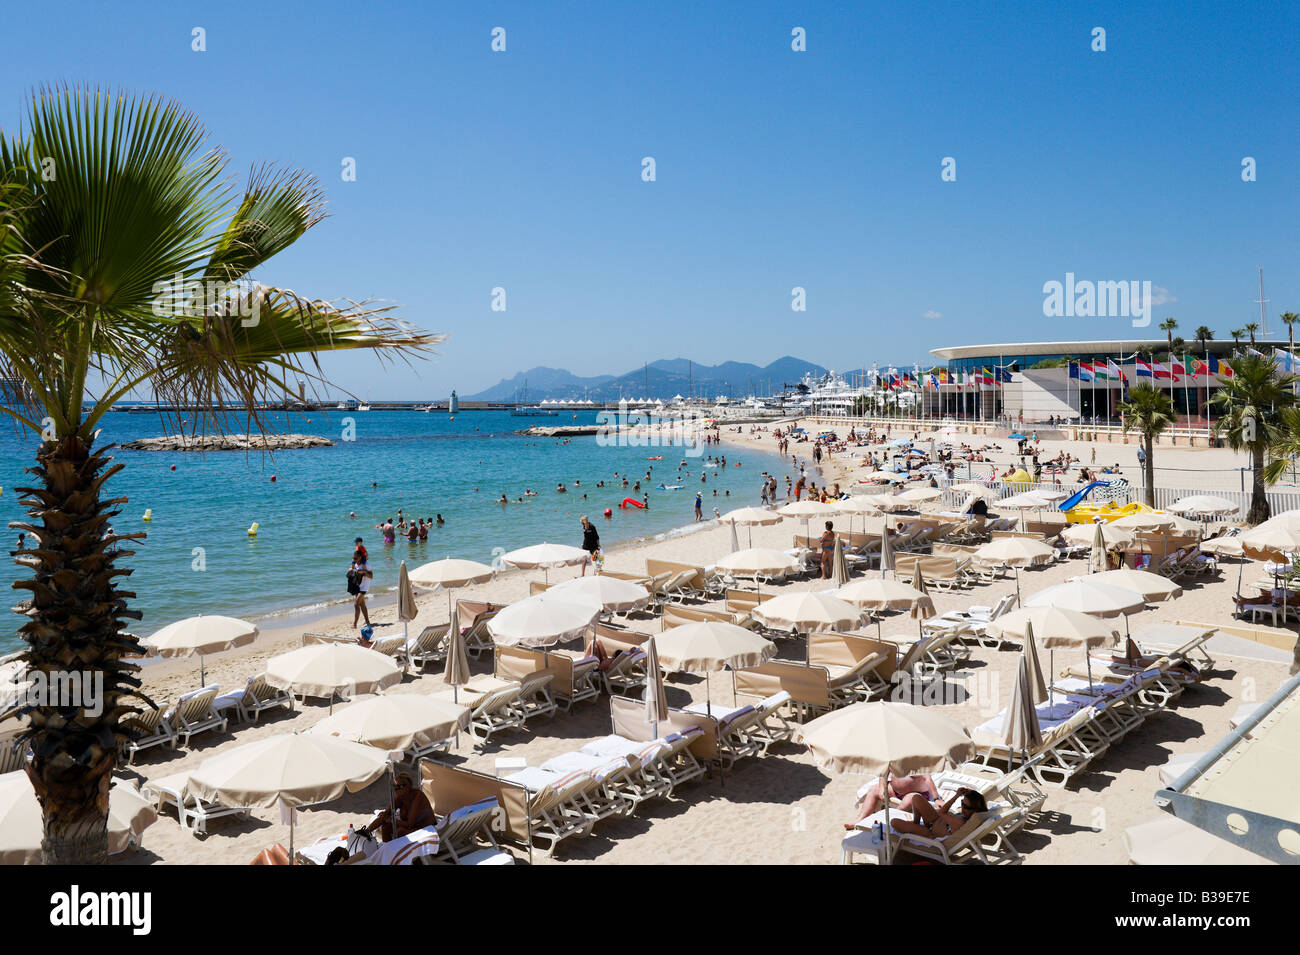 Beach outside the Palais des Festivals, Promenade de la Croisette, Cannes, Cote d Azur, Provence, France Stock Photo